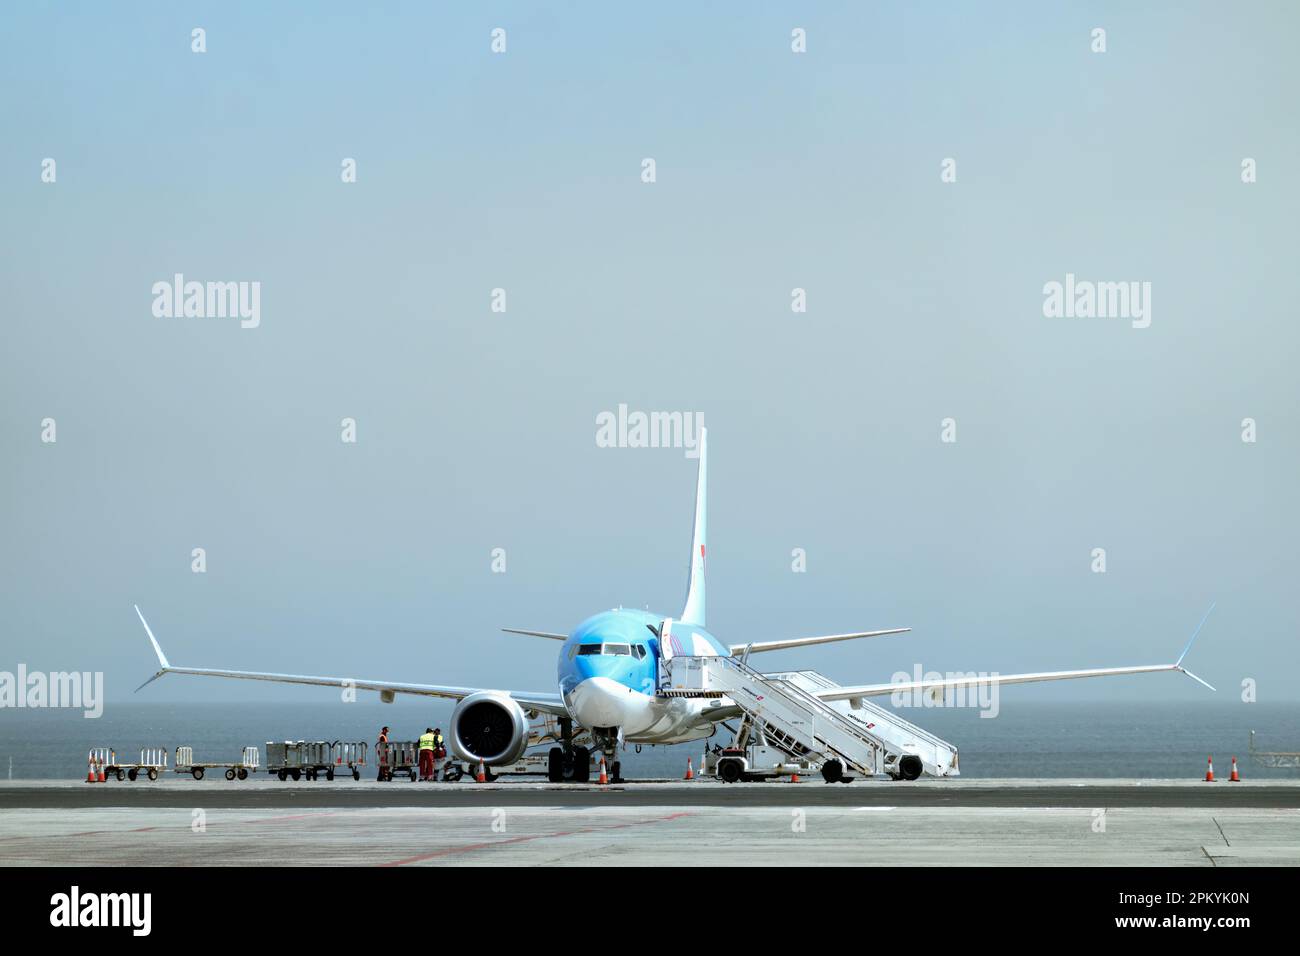 Ein TUI-Flugzeug auf dem Vorfeld eines verkehrsreichen Flughafens. Die Serviceteams bereiten das Flugzeug für den Flug vor und laden das Gepäck der Passagiere Stockfoto